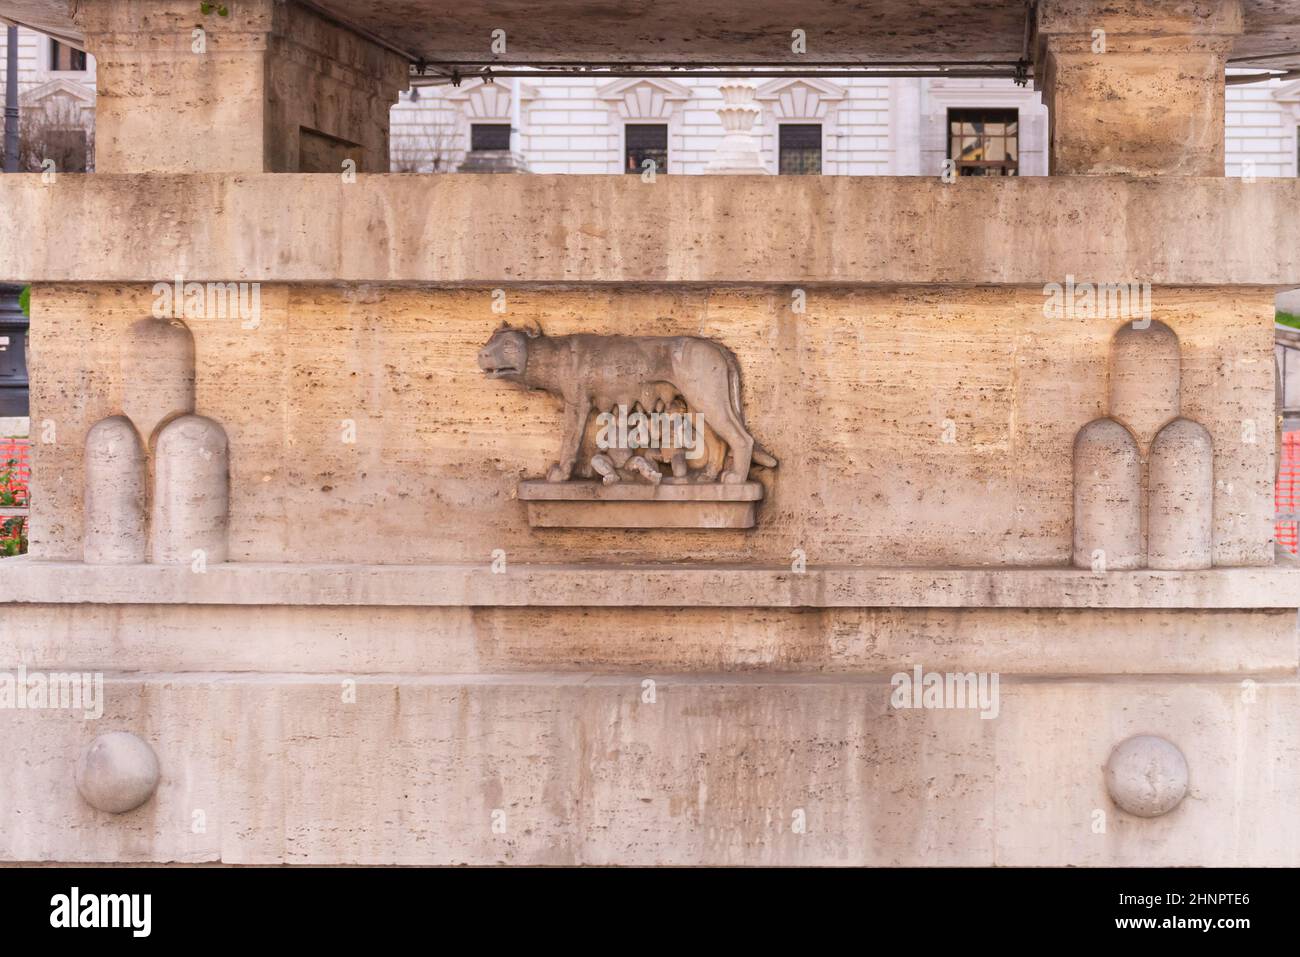 Bas-relief dans les rues de Rome. Le loup nourrit les enfants avec son lait. Monument sur la rue de Rome. Banque D'Images